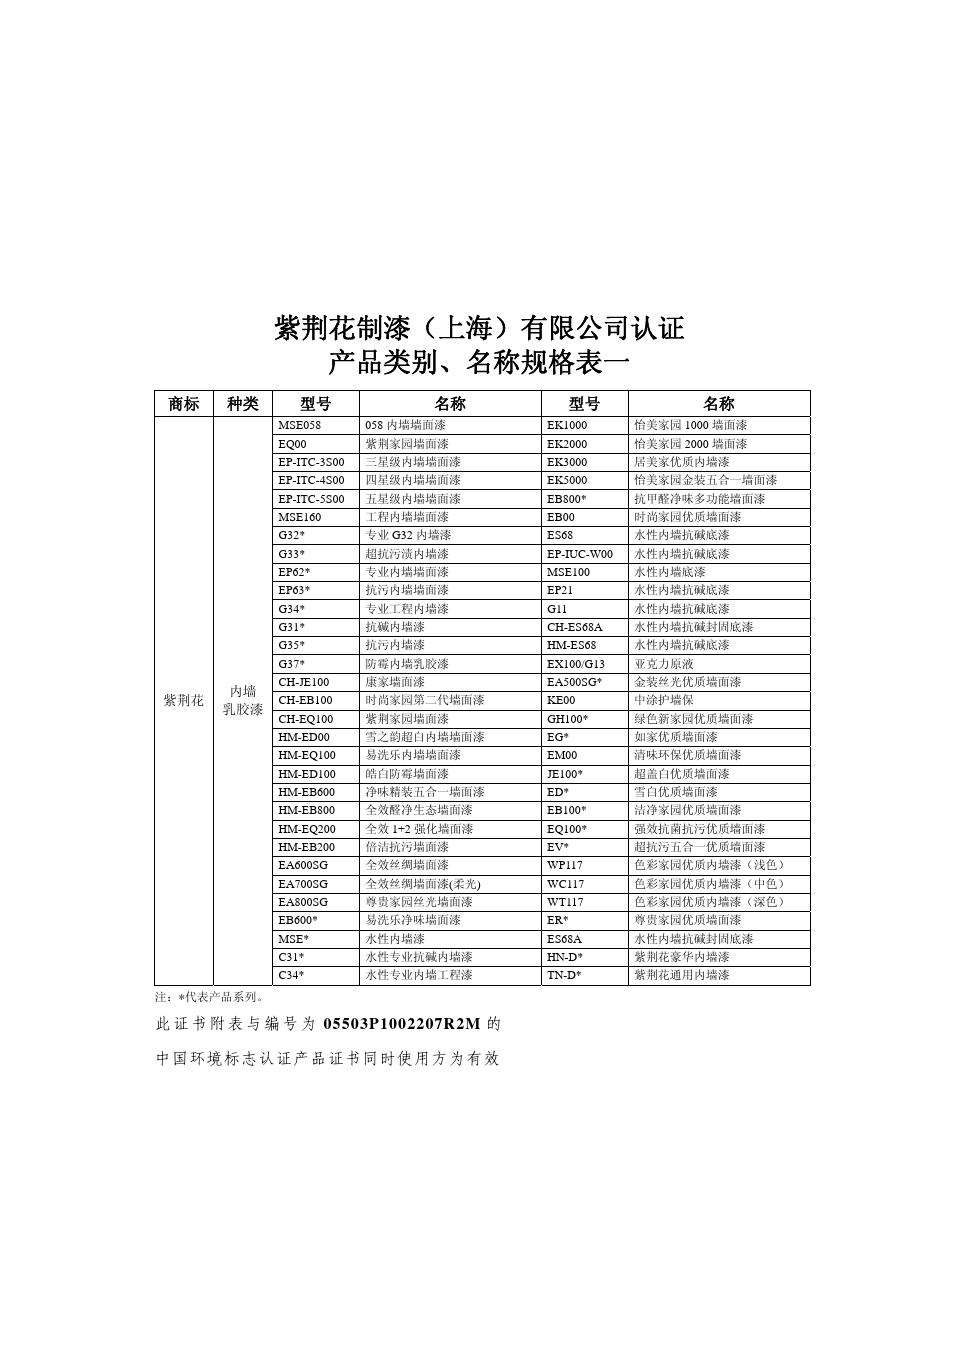 紫荆花制漆(上海)有限公司认证 产品类别、名称规格表一